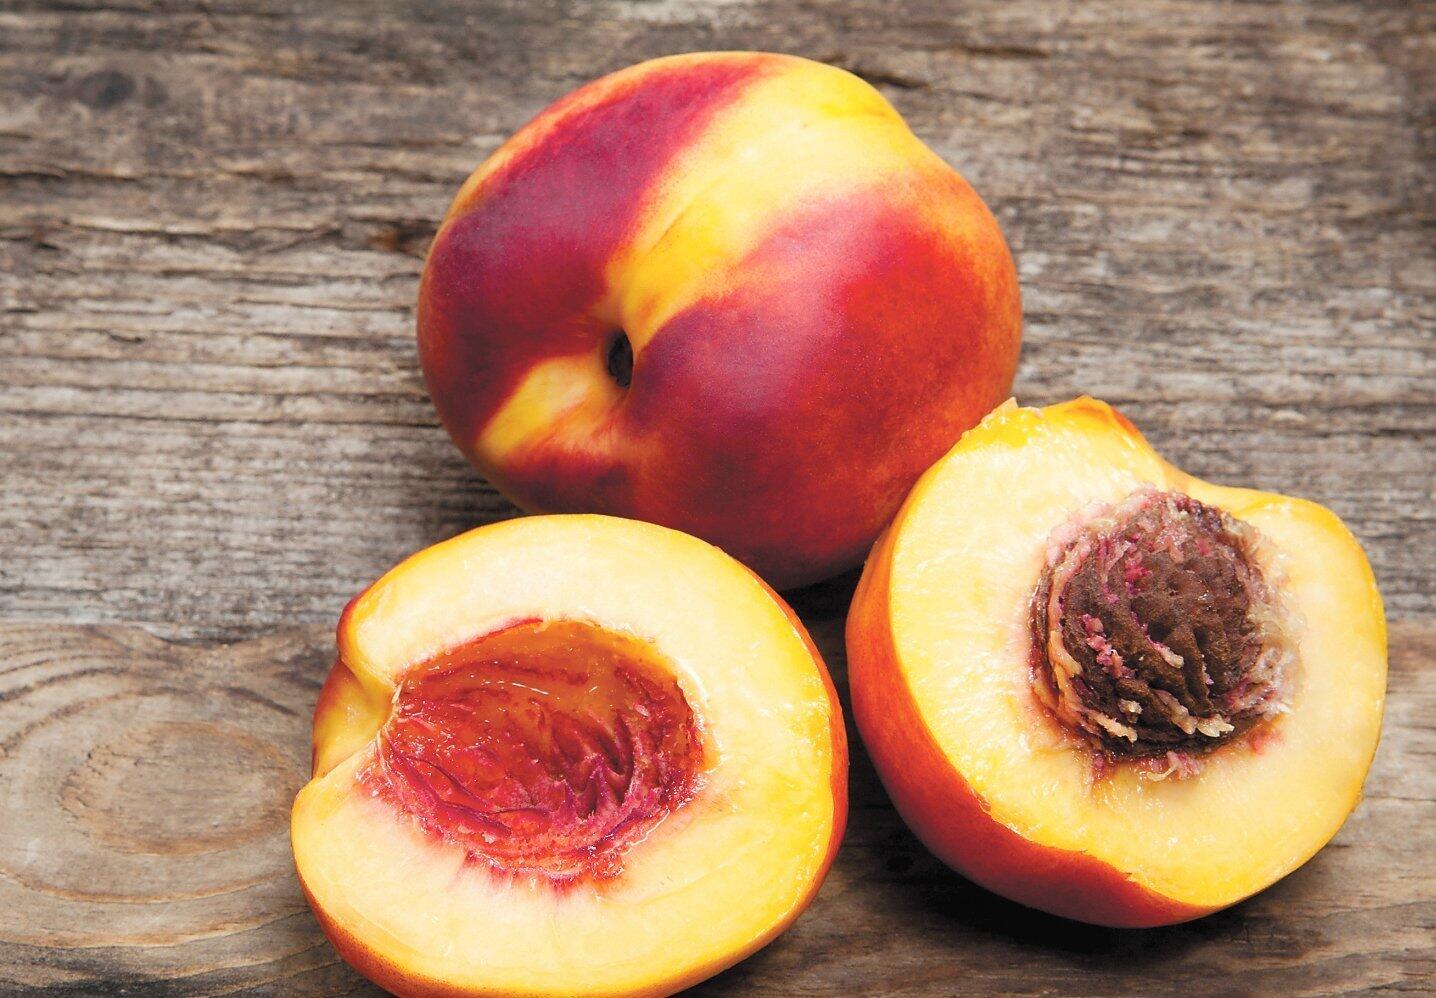 Fresh, peachy ways to serve nectarines - The San Diego Union-Tribune